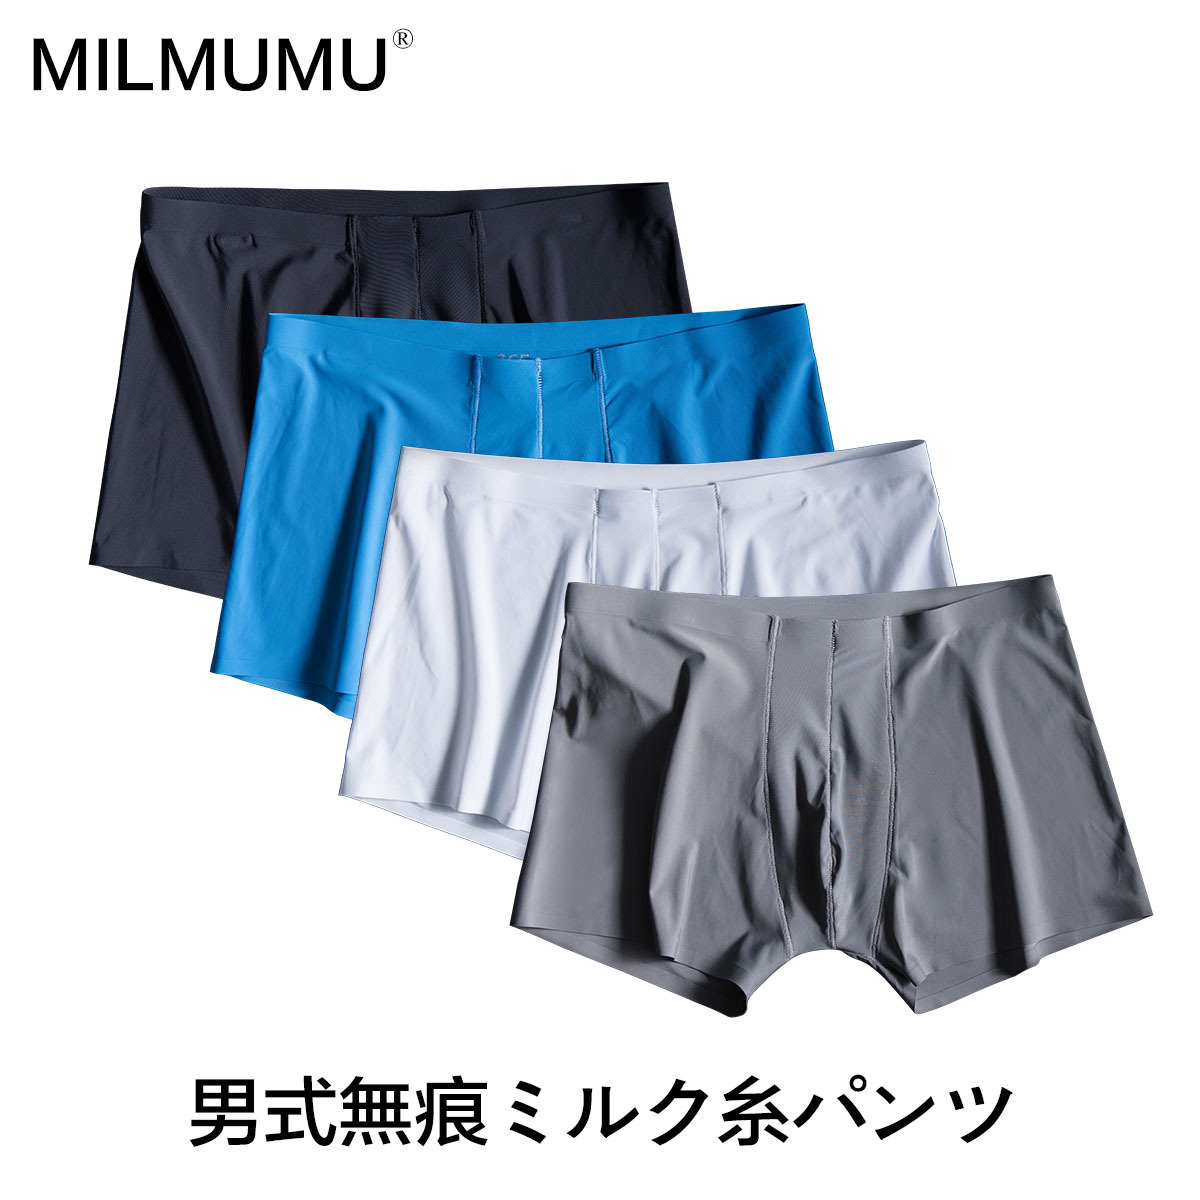 日本MILMUMU羊奶丝无痕内裤男冰丝超薄速干运动纯色个性潮平角裤